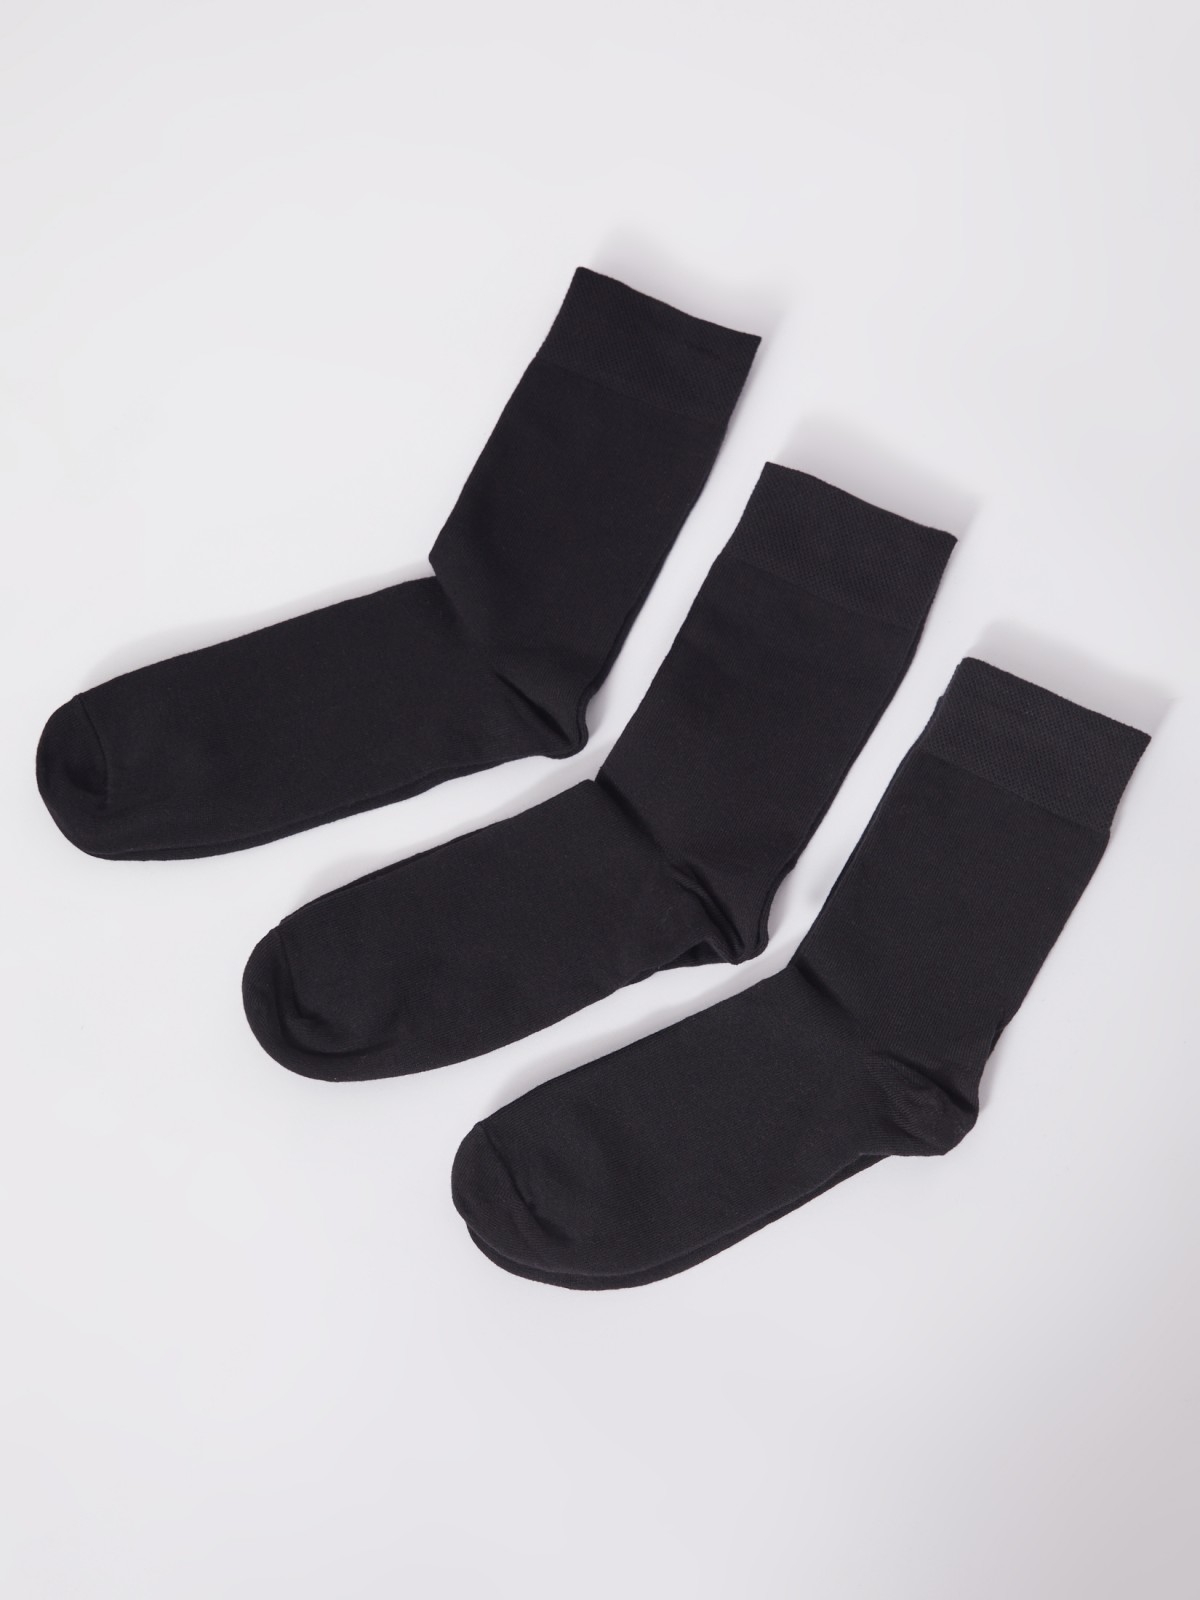 Набор носков (3 пары в комплекте) zolla 01331996G015, цвет черный, размер 25-27